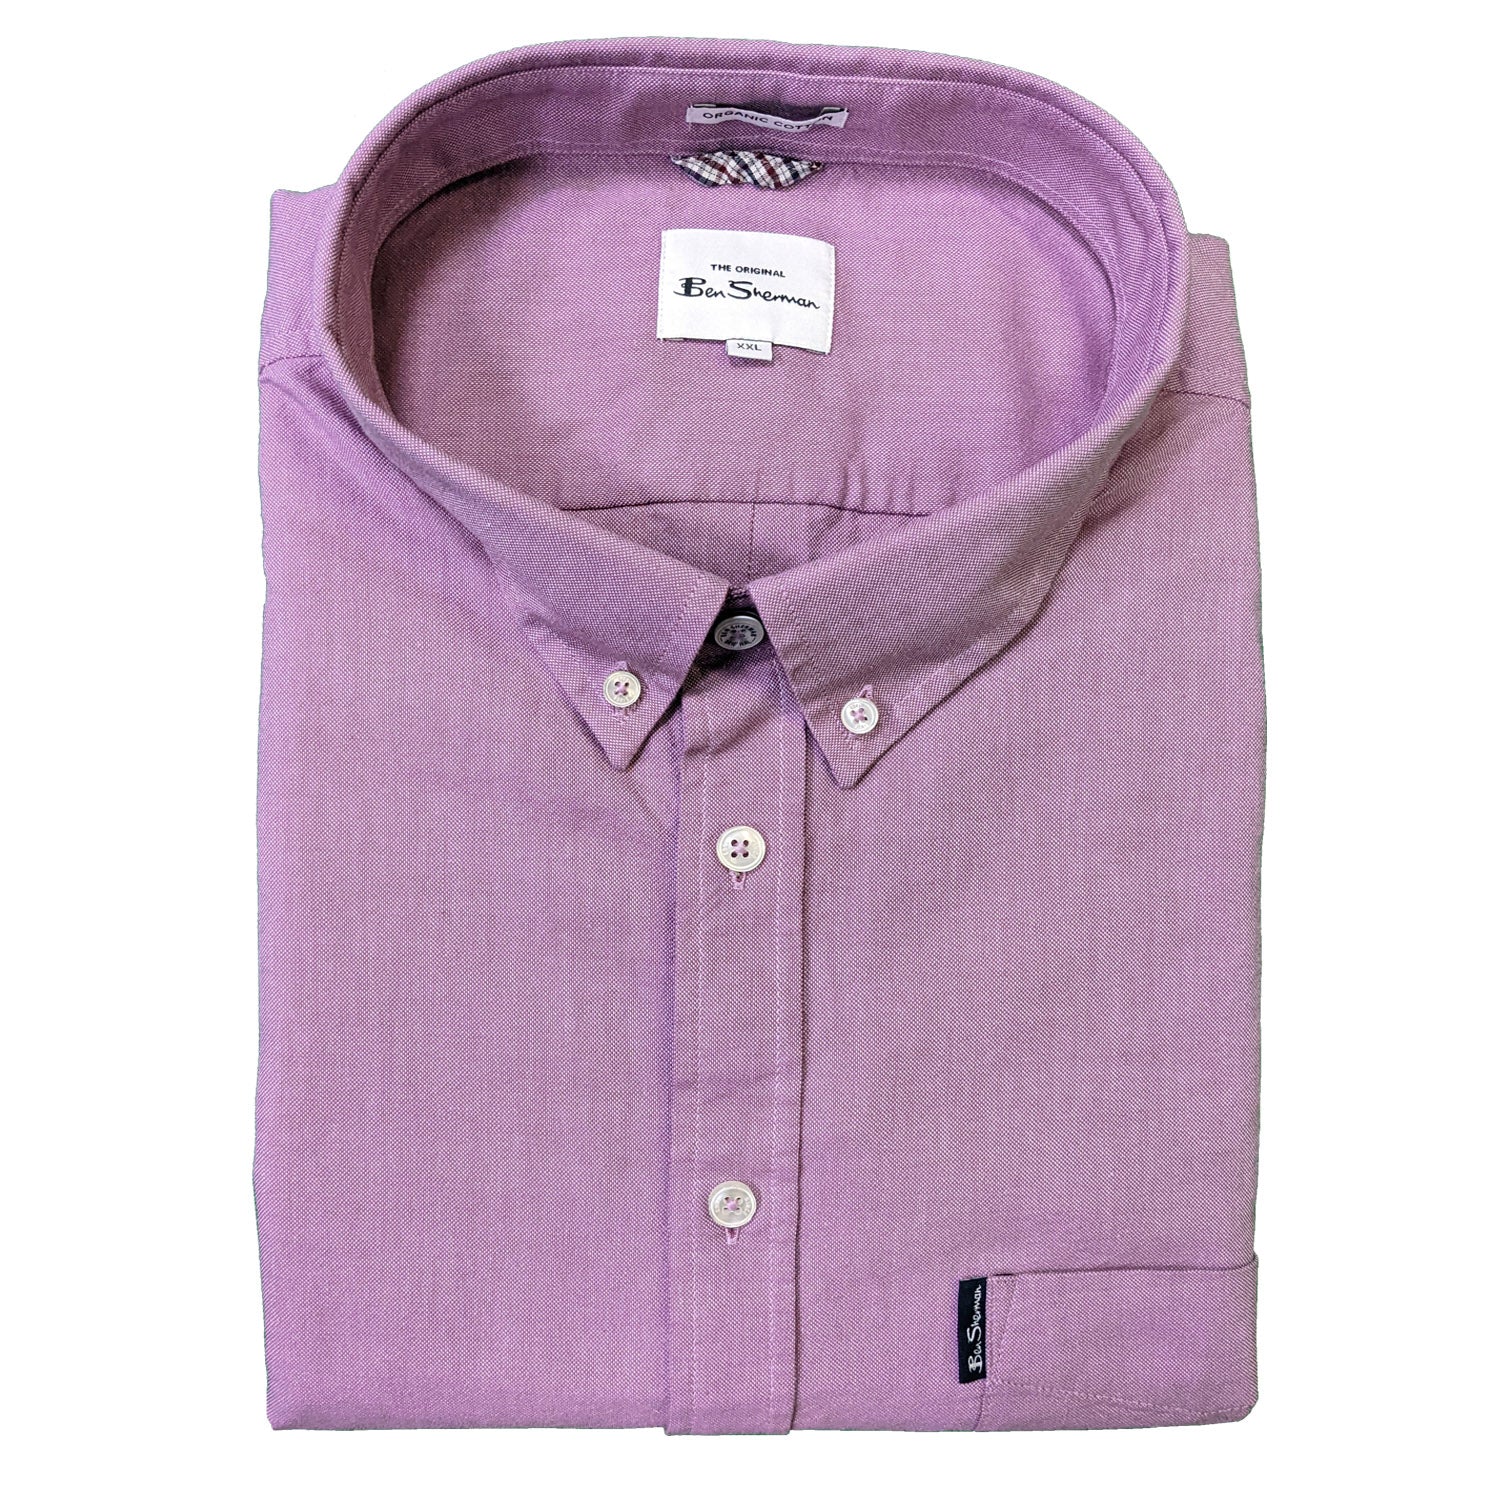 Ben Sherman S/S Oxford Shirt - 0065095IL - Grape 1